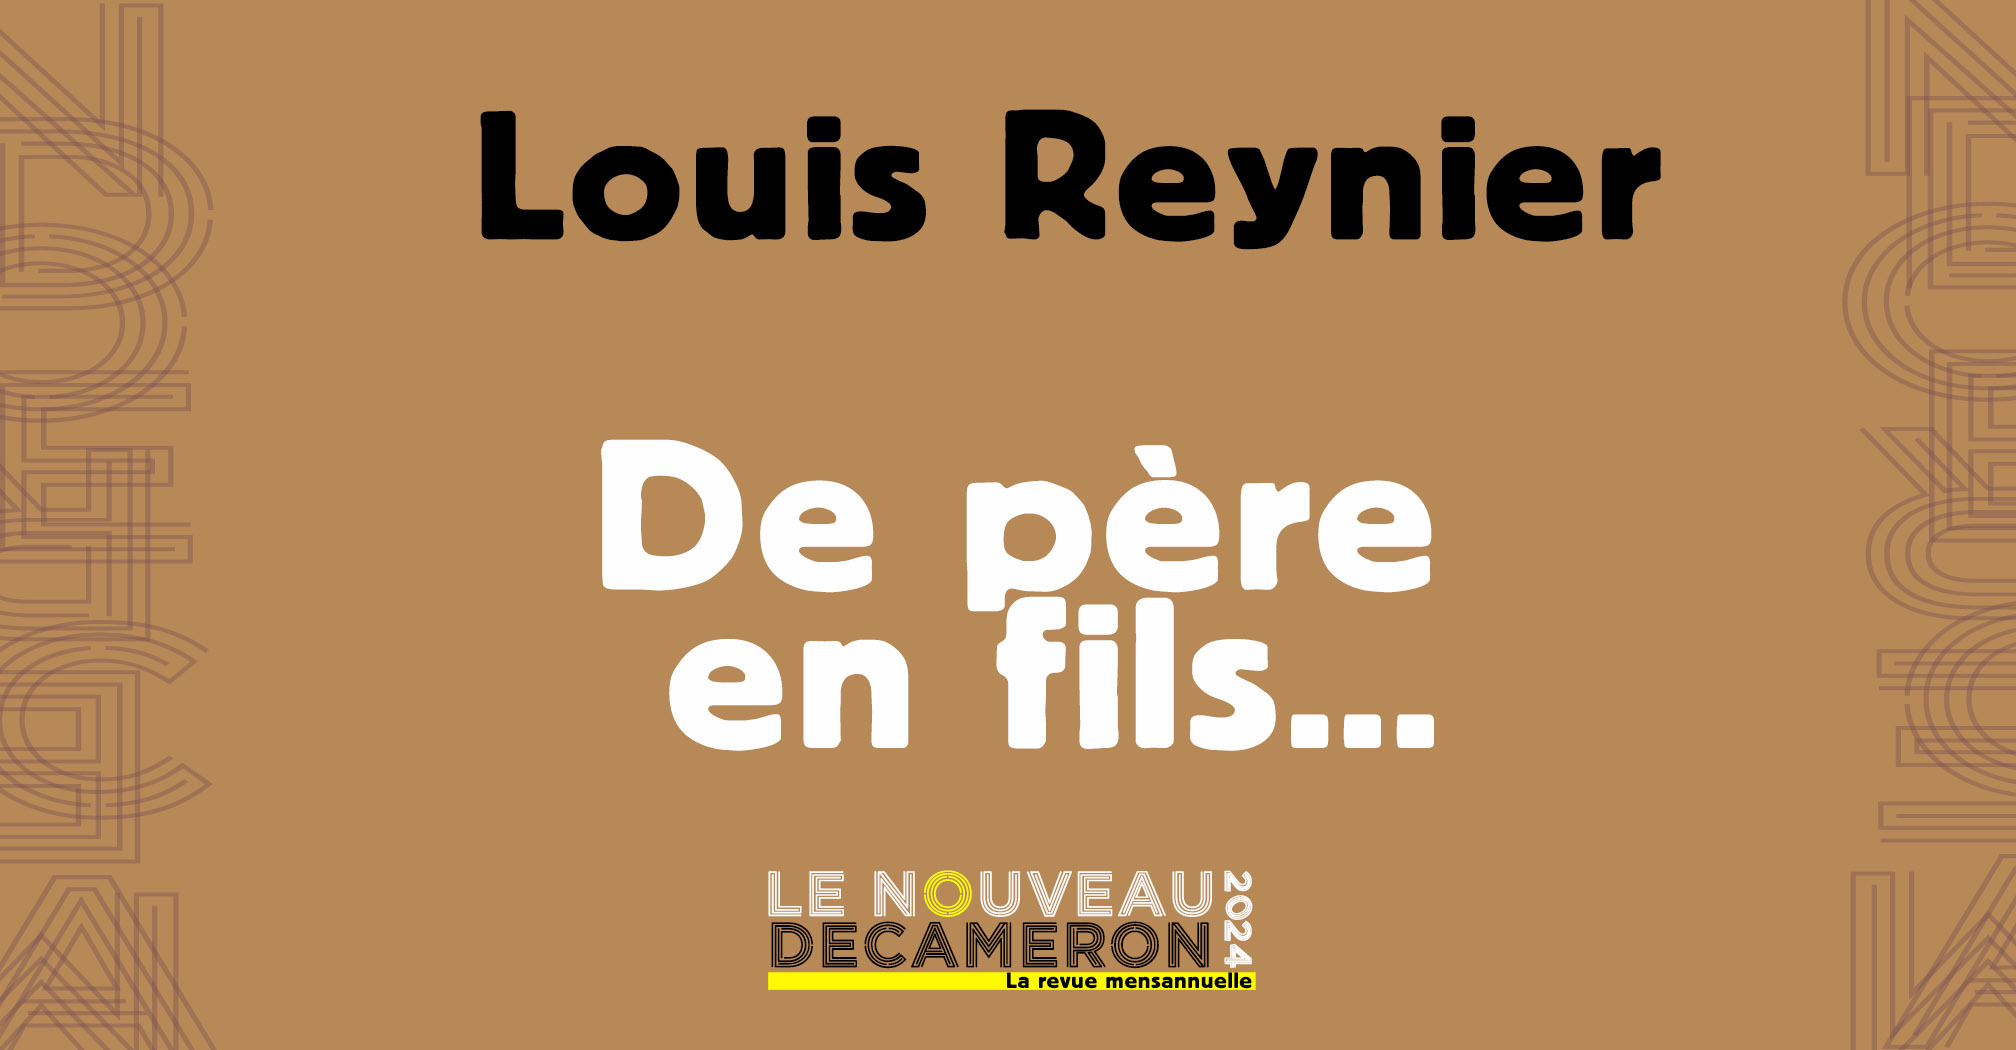 Louis Reynier -  De père en fils... 